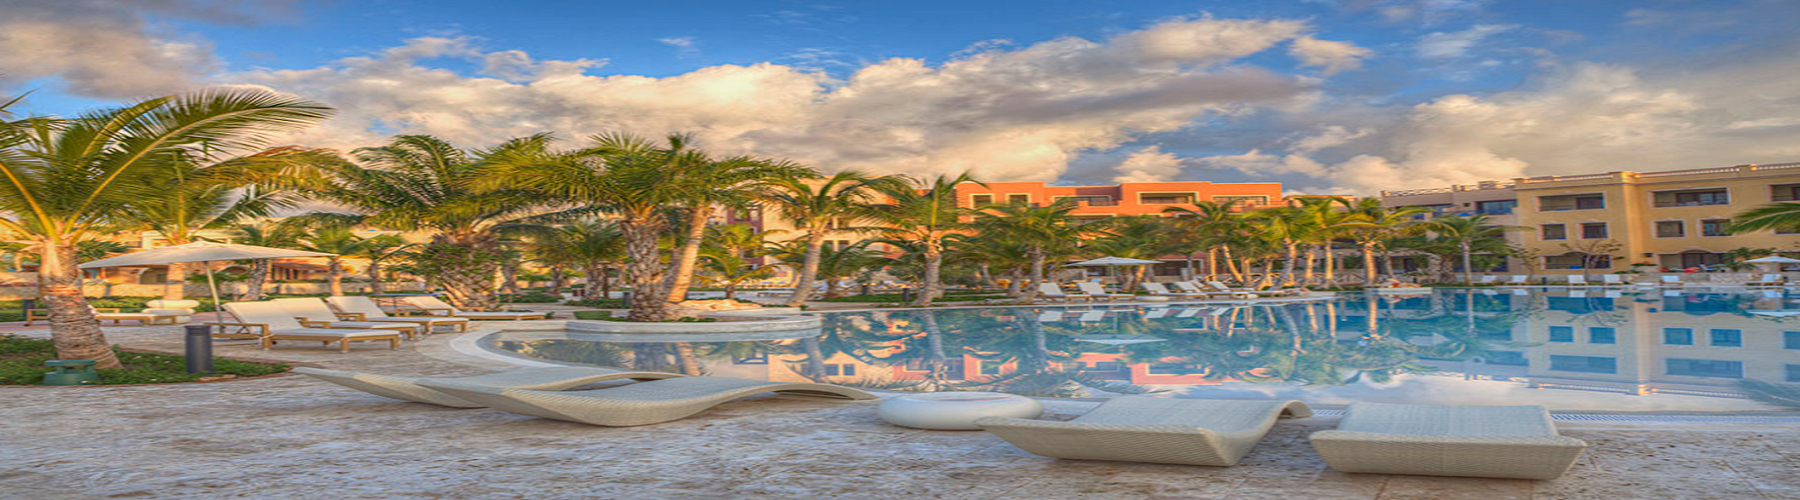 Отель - апартаменты Ancora Punta Cana